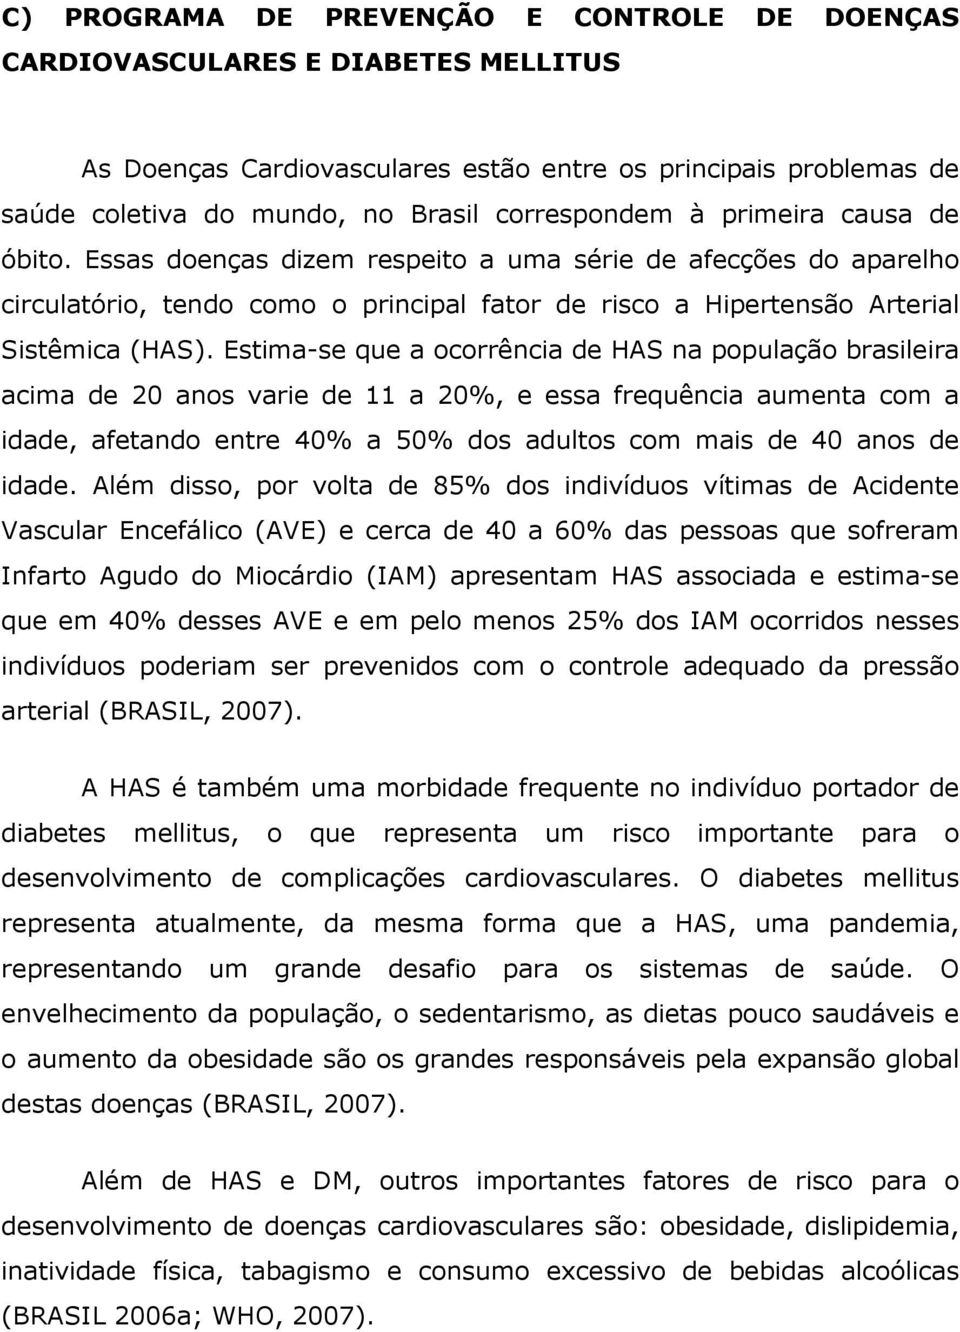 Estima-se que a ocorrência de HAS na população brasileira acima de 20 anos varie de 11 a 20%, e essa frequência aumenta com a idade, afetando entre 40% a 50% dos adultos com mais de 40 anos de idade.